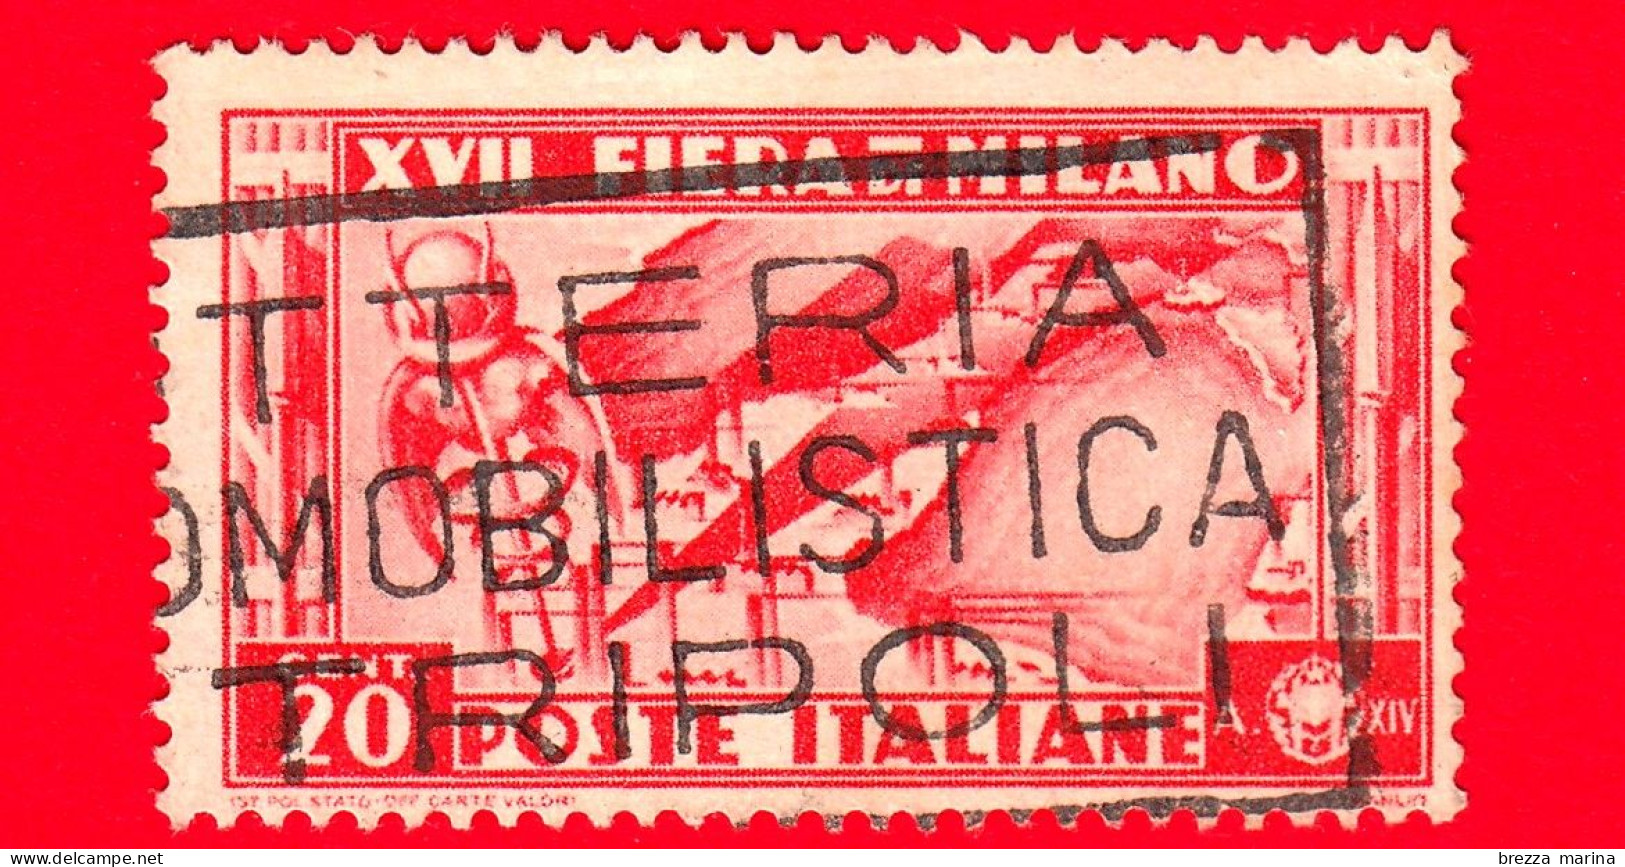 ITALIA - REGNO - Usato - 1936 - 17ª Fiera Di Milano - Simbolo Del Commercio E Carta D'Italia - 20 C. - Usati